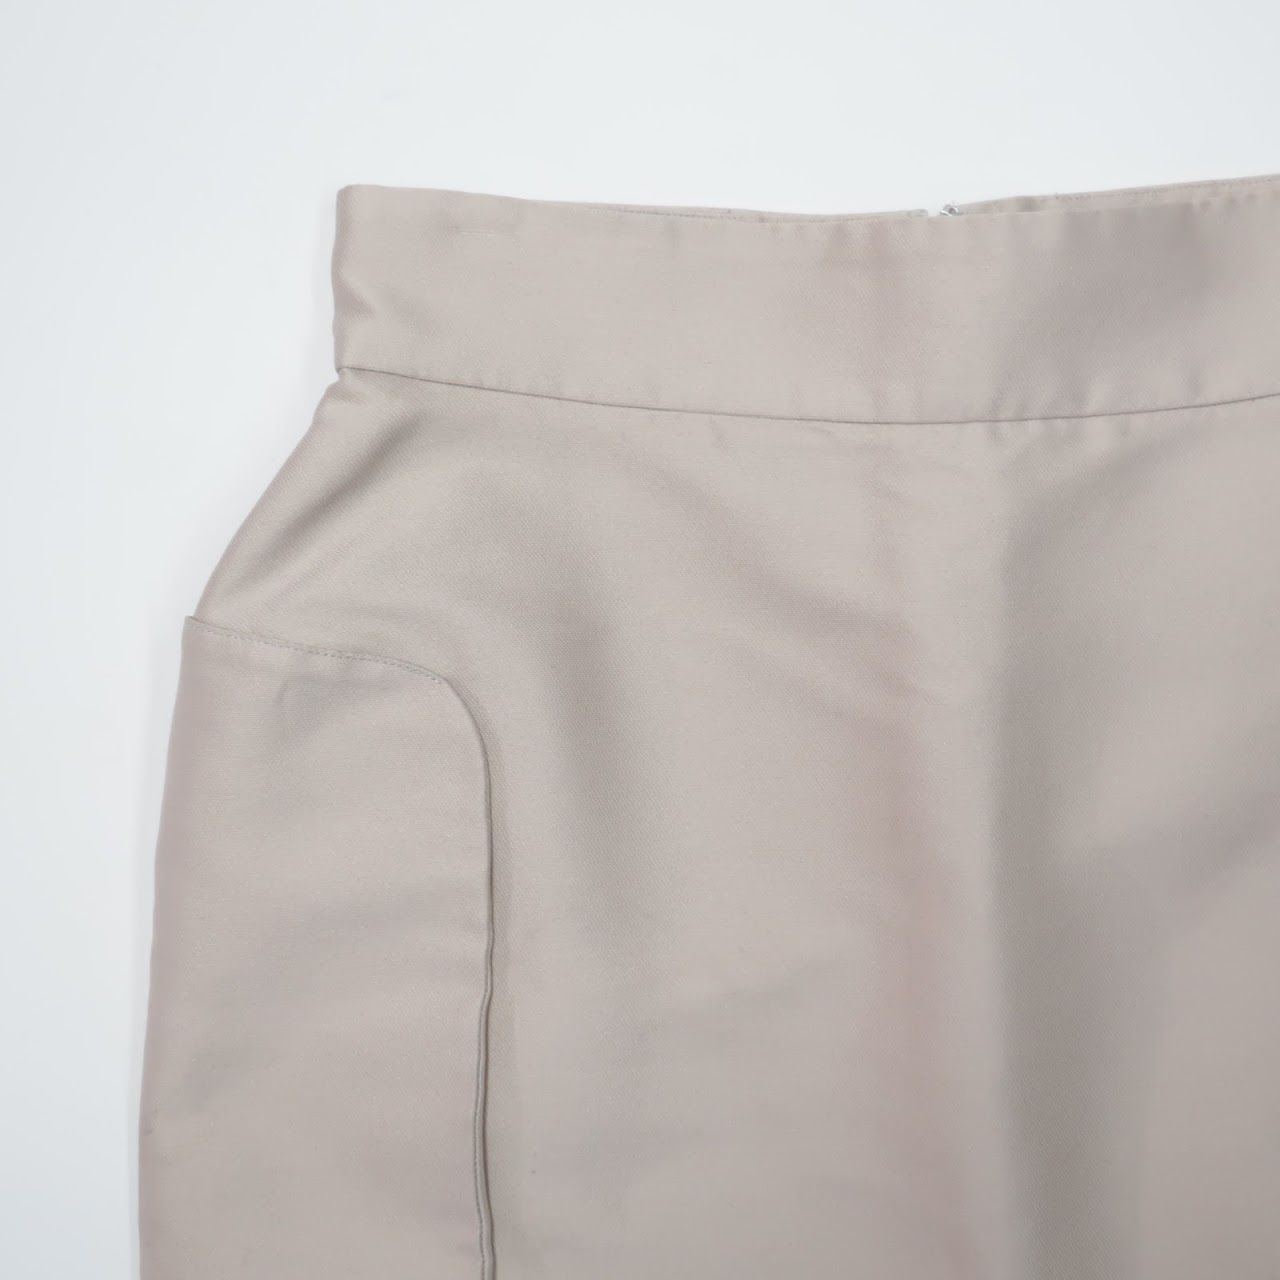 Yves Saint Laurent Beige Pencil Skirt